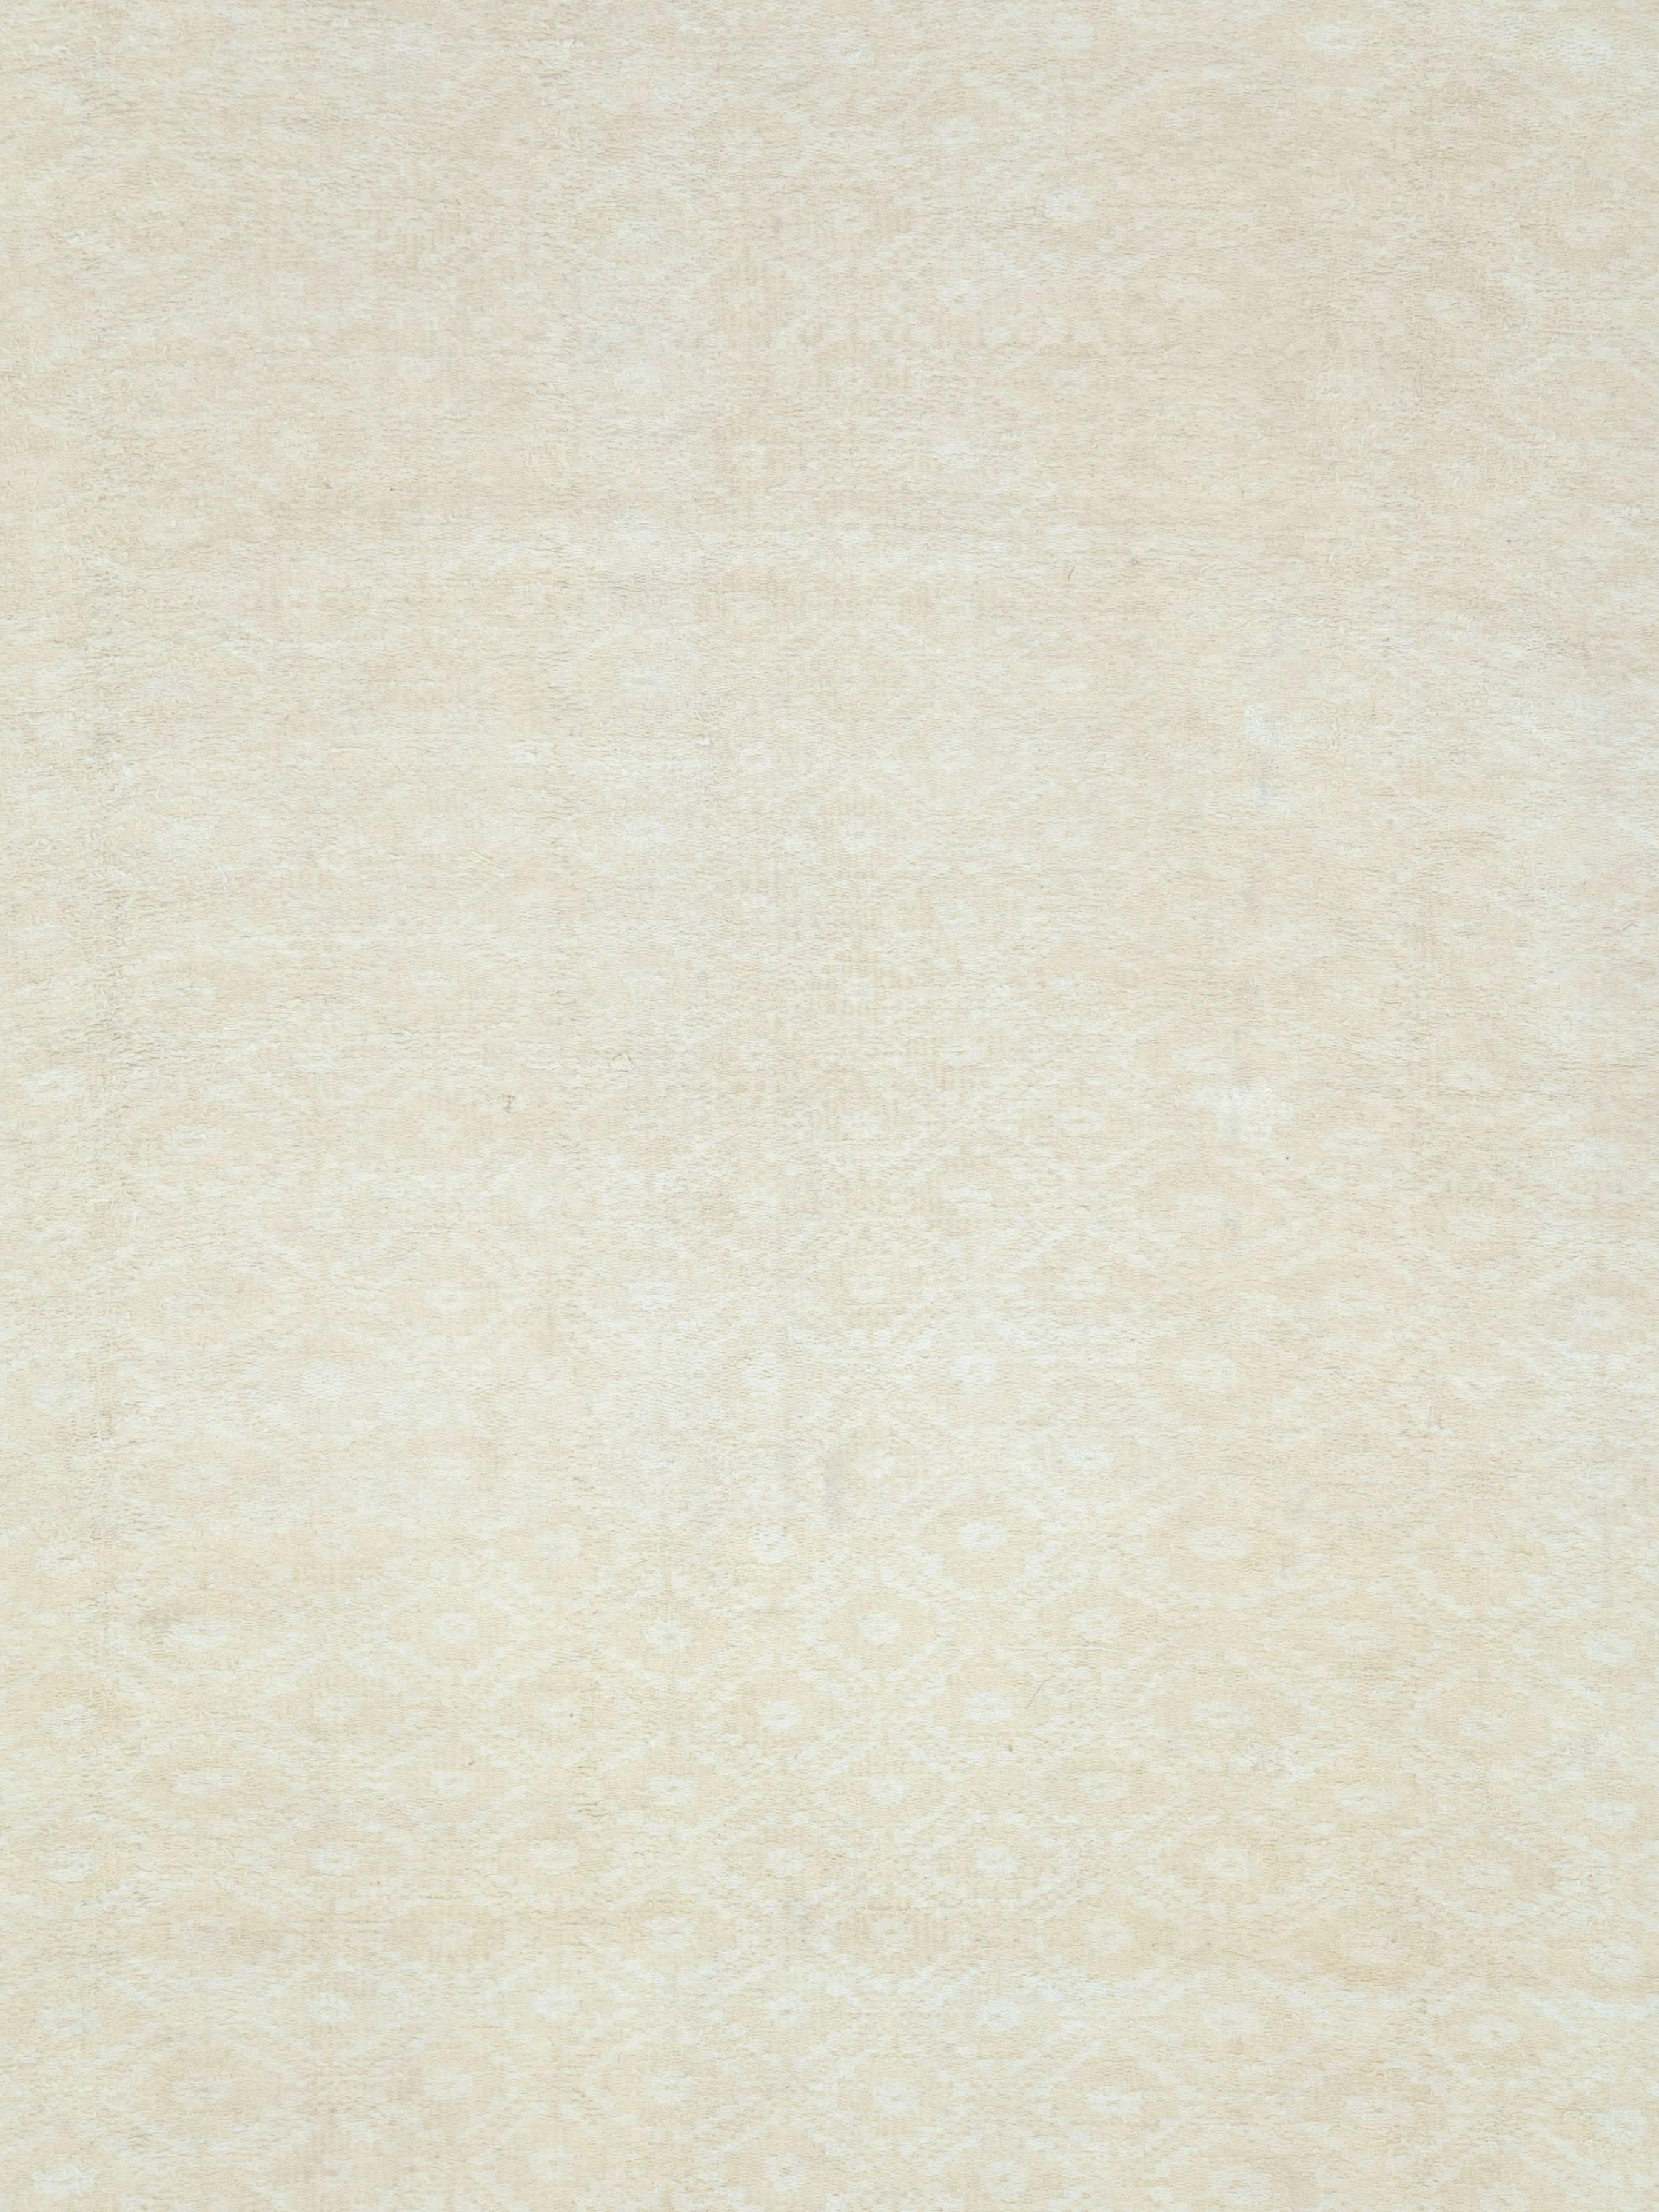 Ein alter persischer Flachgewebe-Teppich aus der Mitte des 20. Jahrhunderts.

Maße: 9' 7